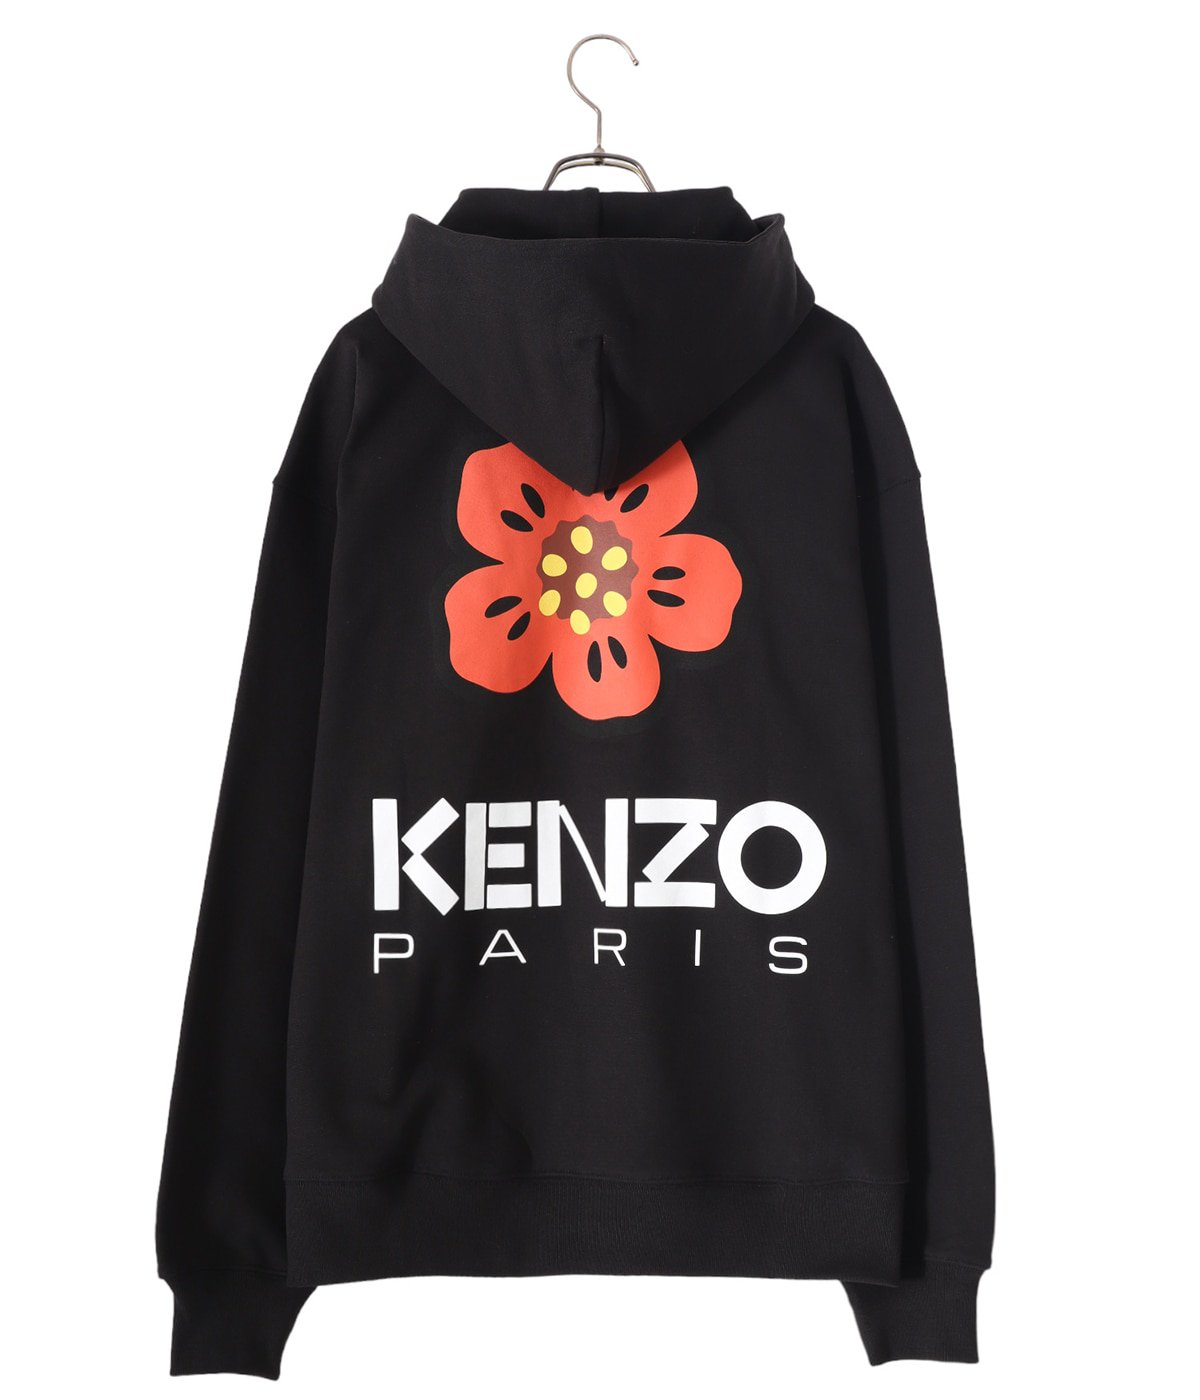 11,475円KENZO PARIS 、KENZO BOKE FLOWERパーカー